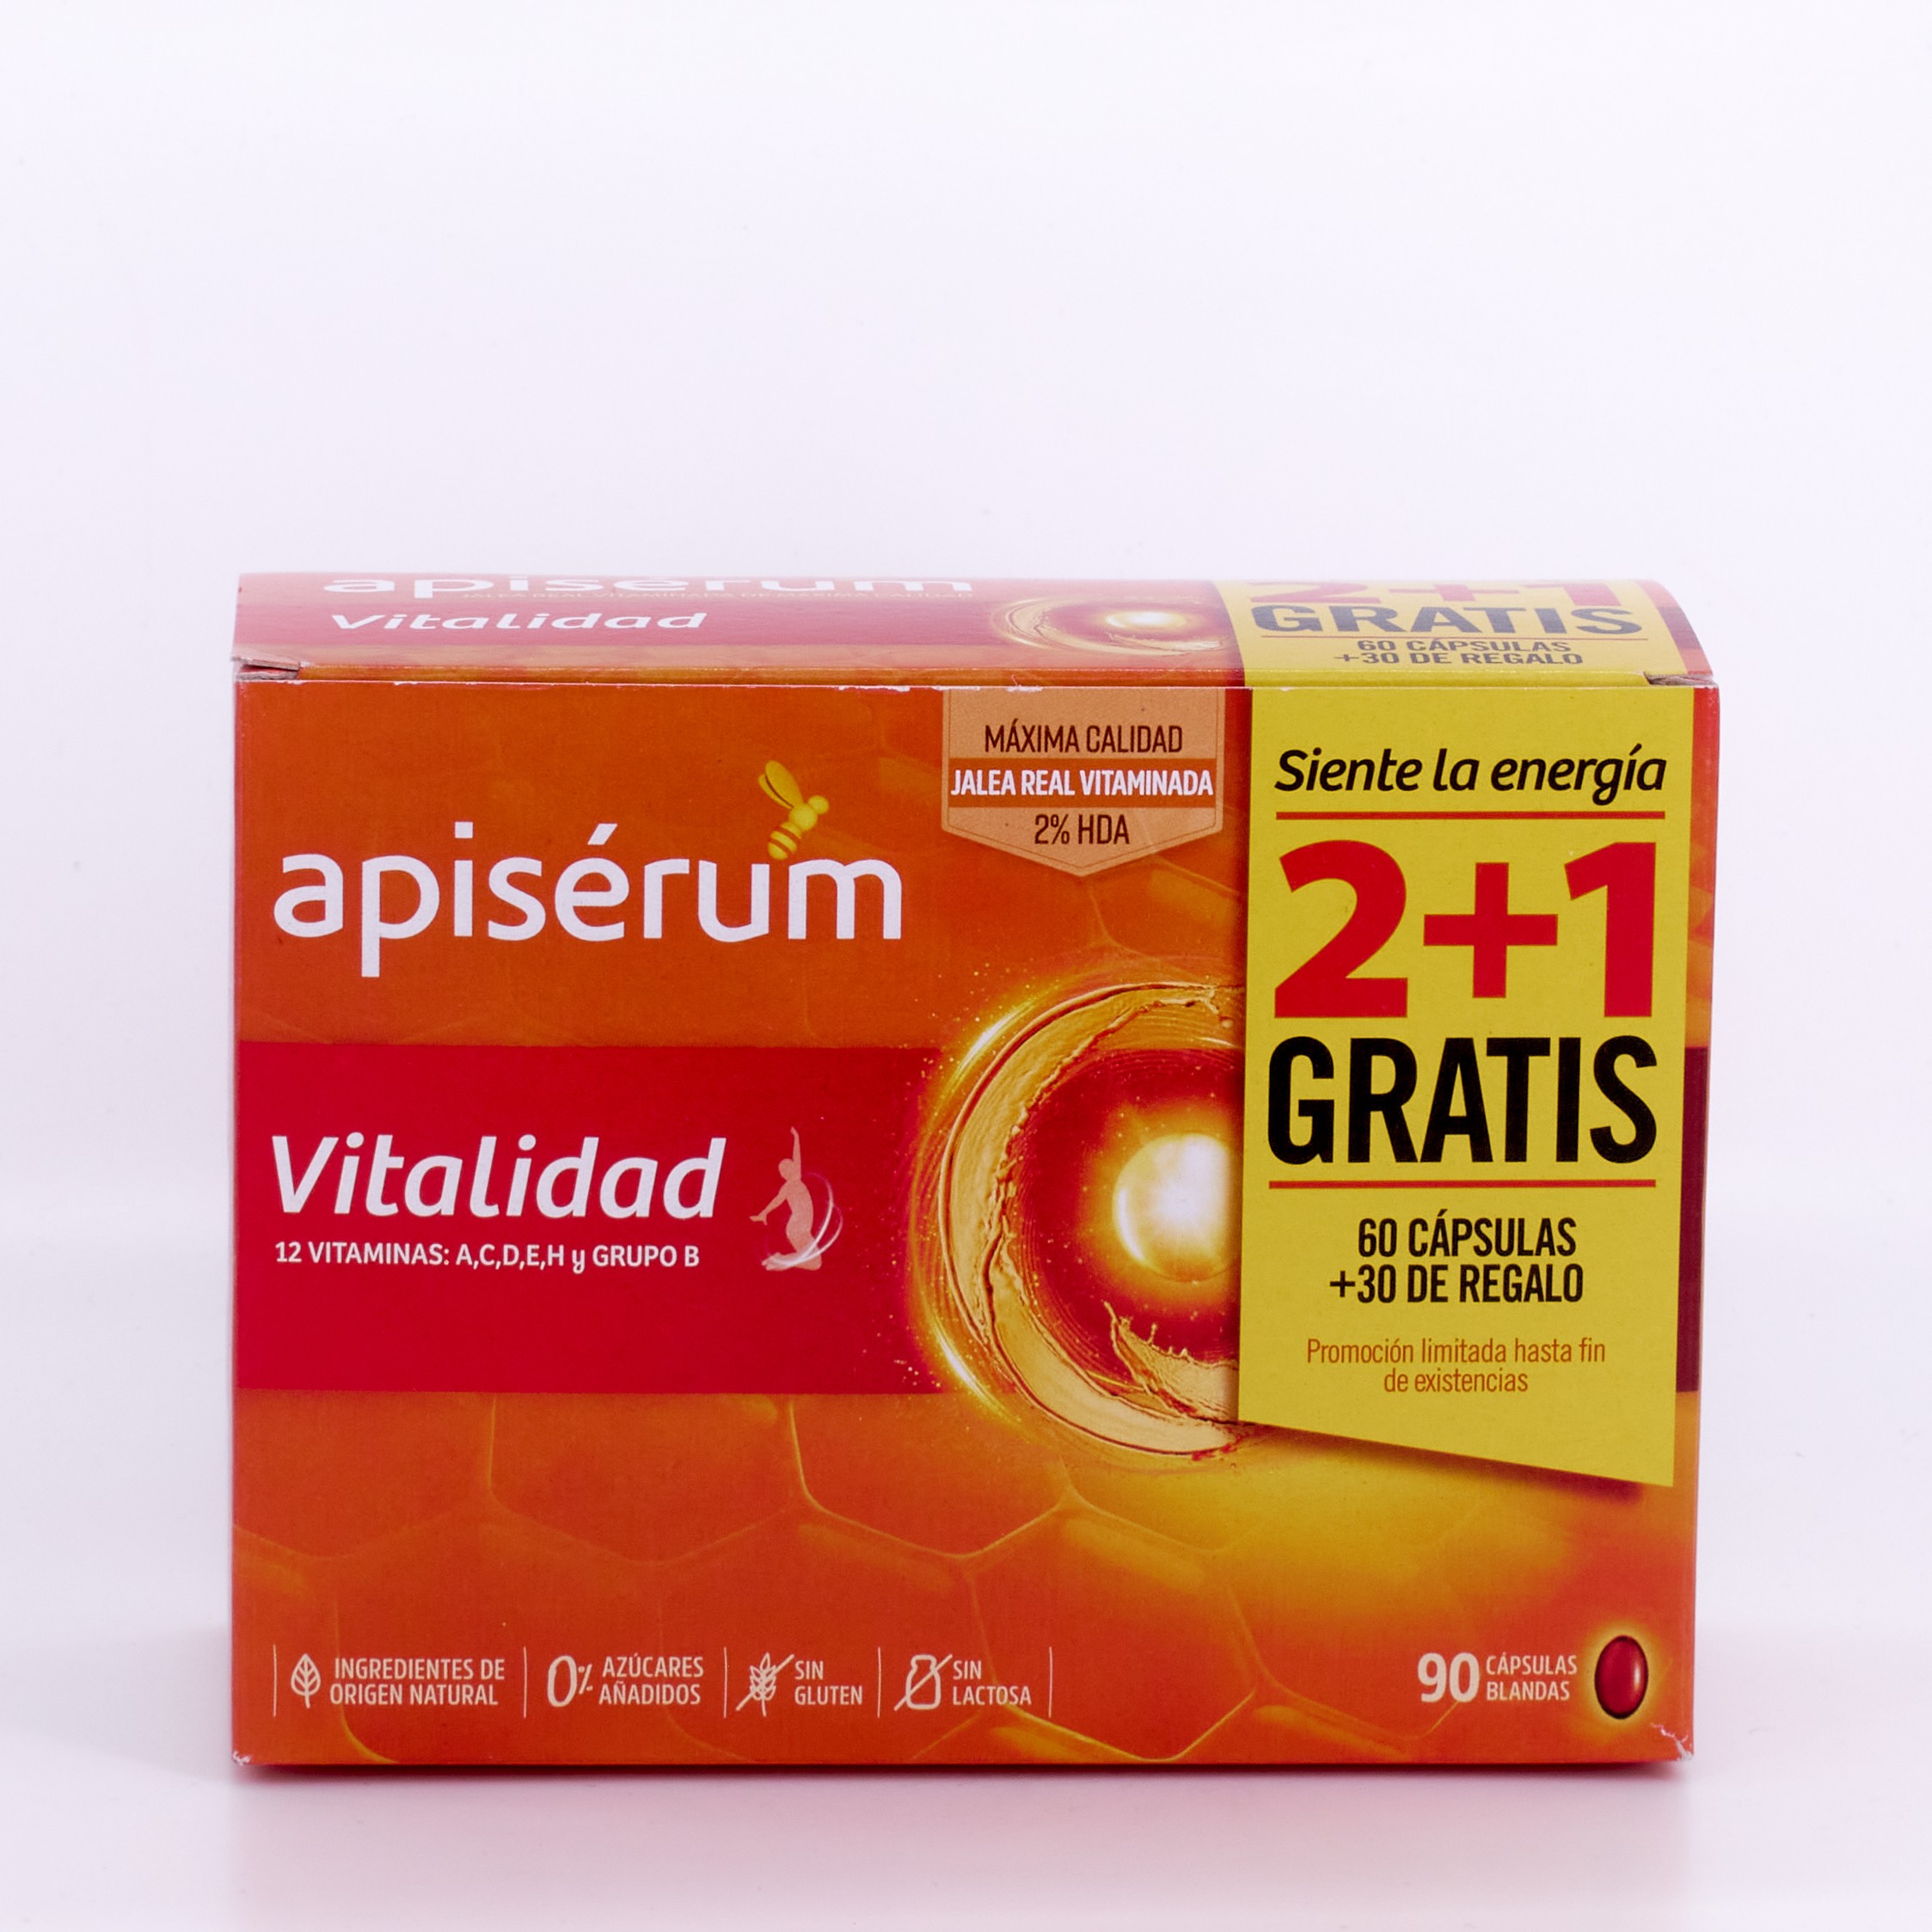 Vitality apiserum, 60+30 cápsulas